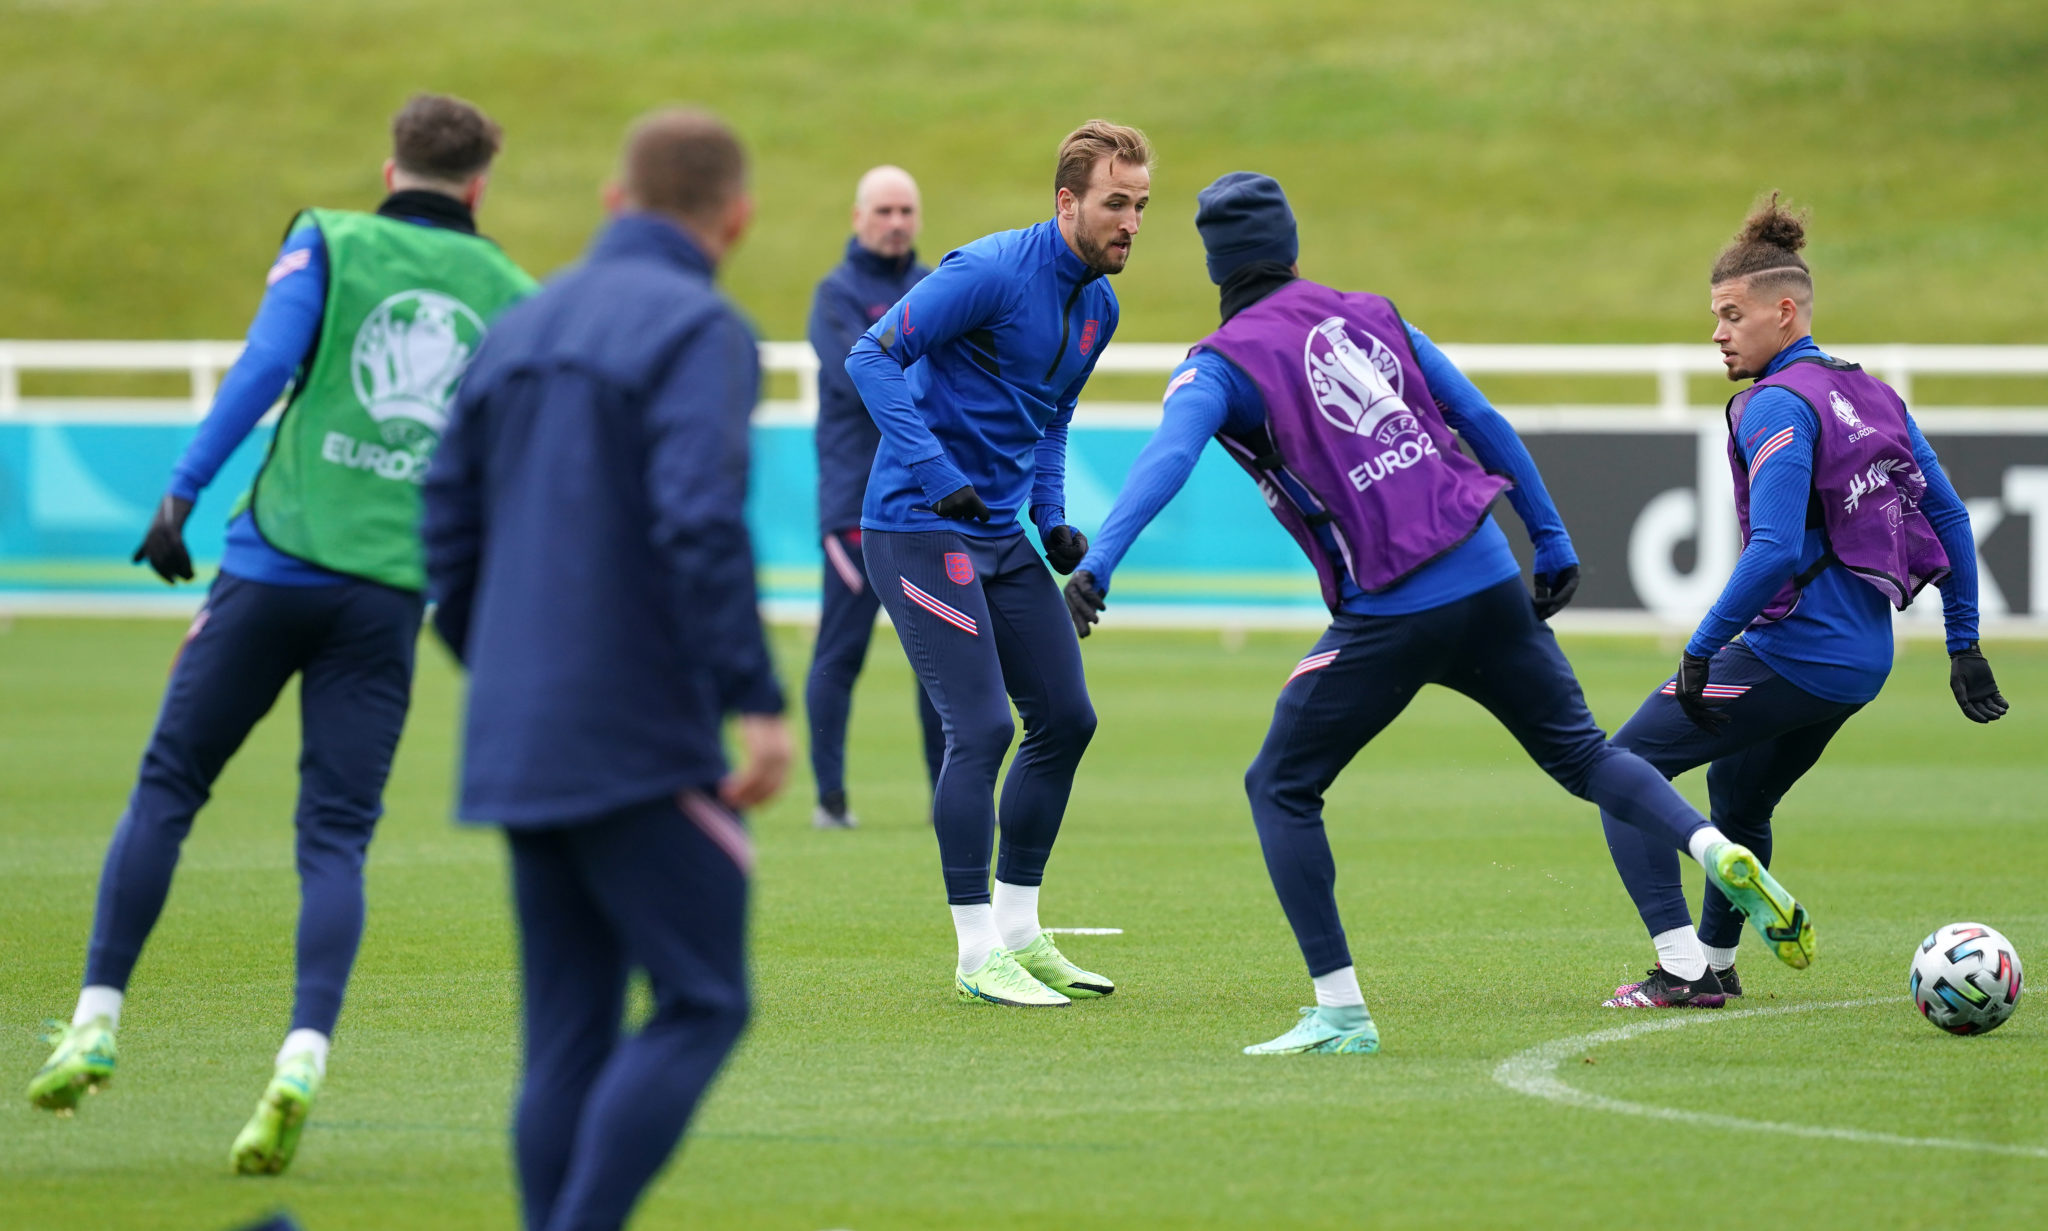 England's Harry Kane trains ahead of semi final